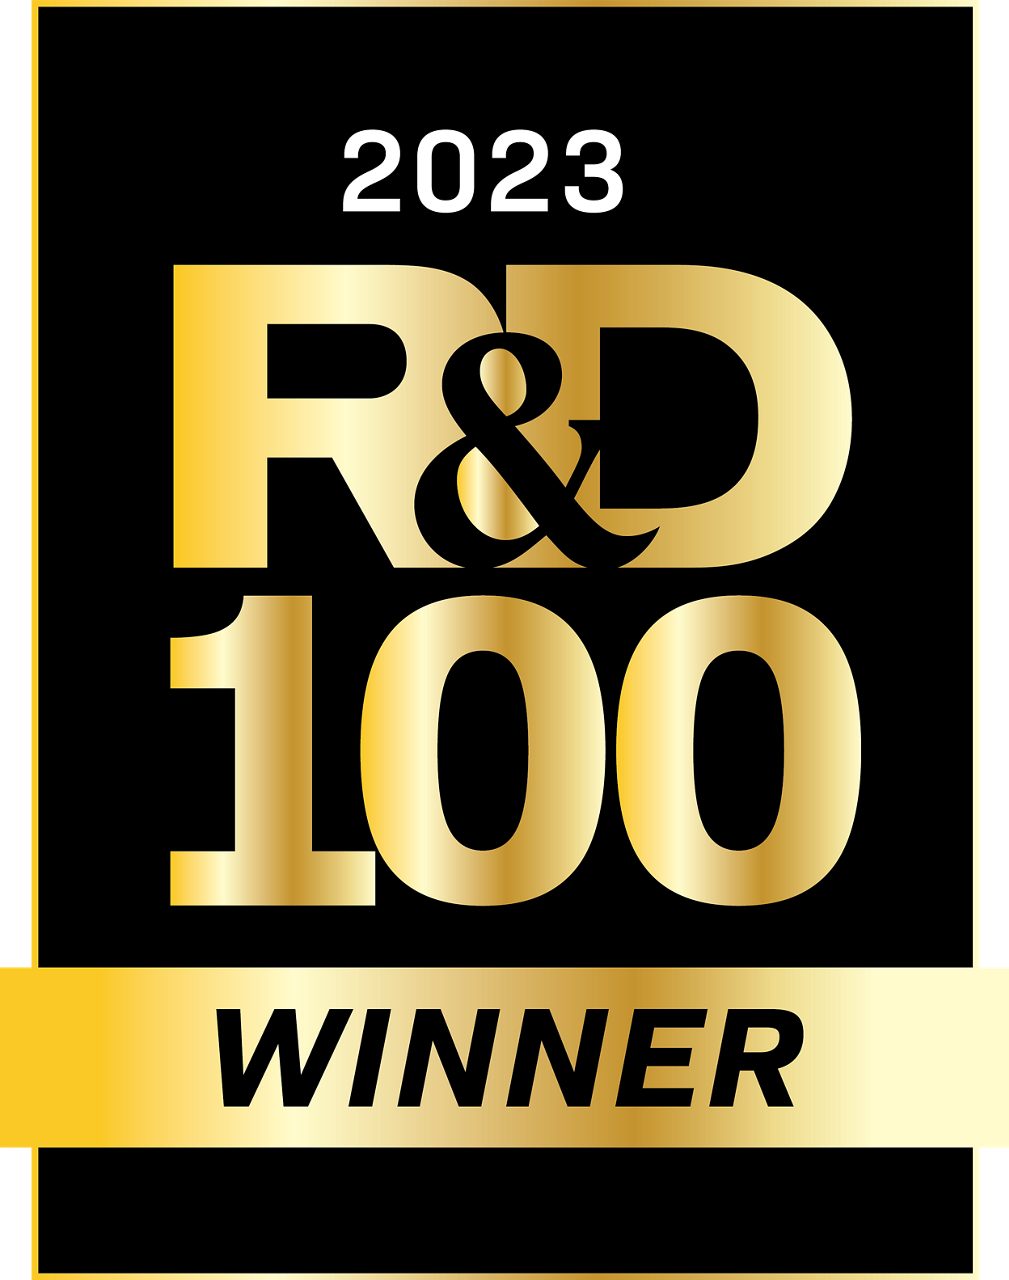 Vencedor do prêmio R&D 100 de 2023